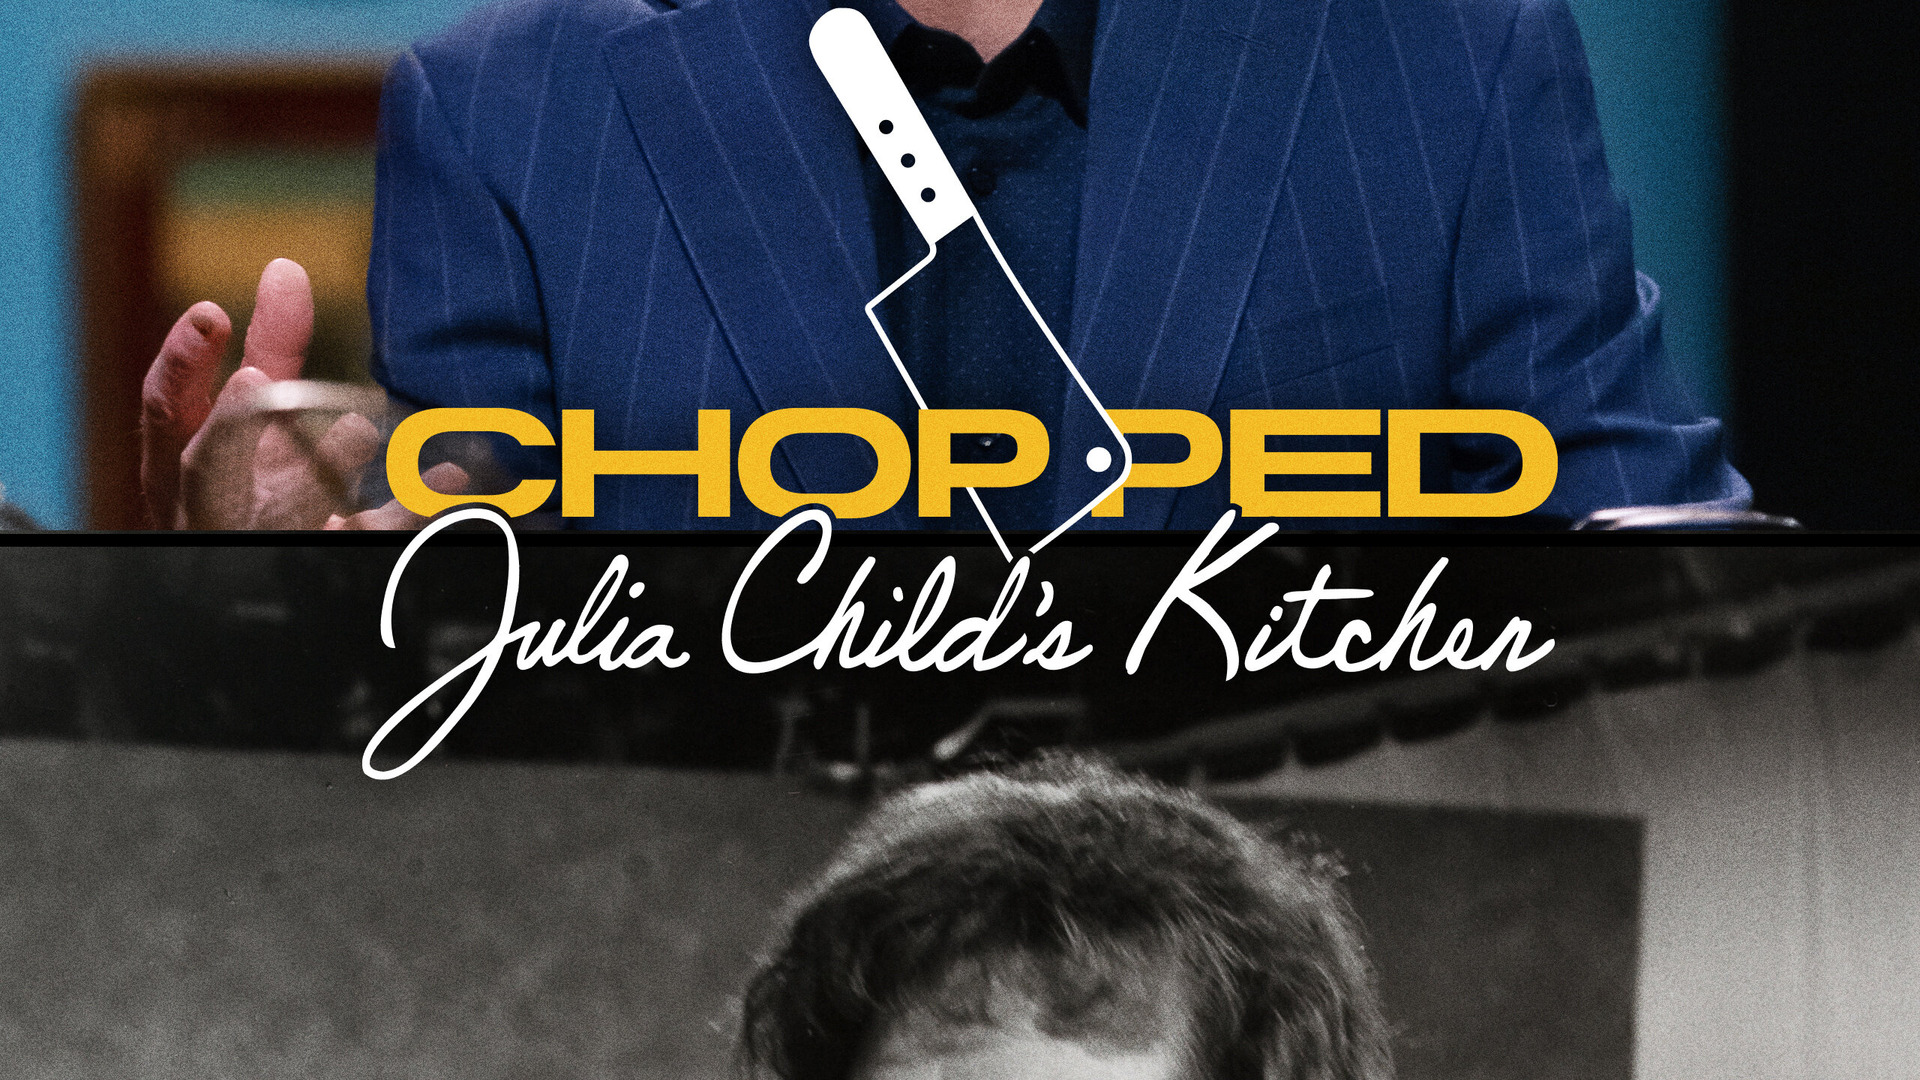 Show Chopped: Julia Child's Kitchen